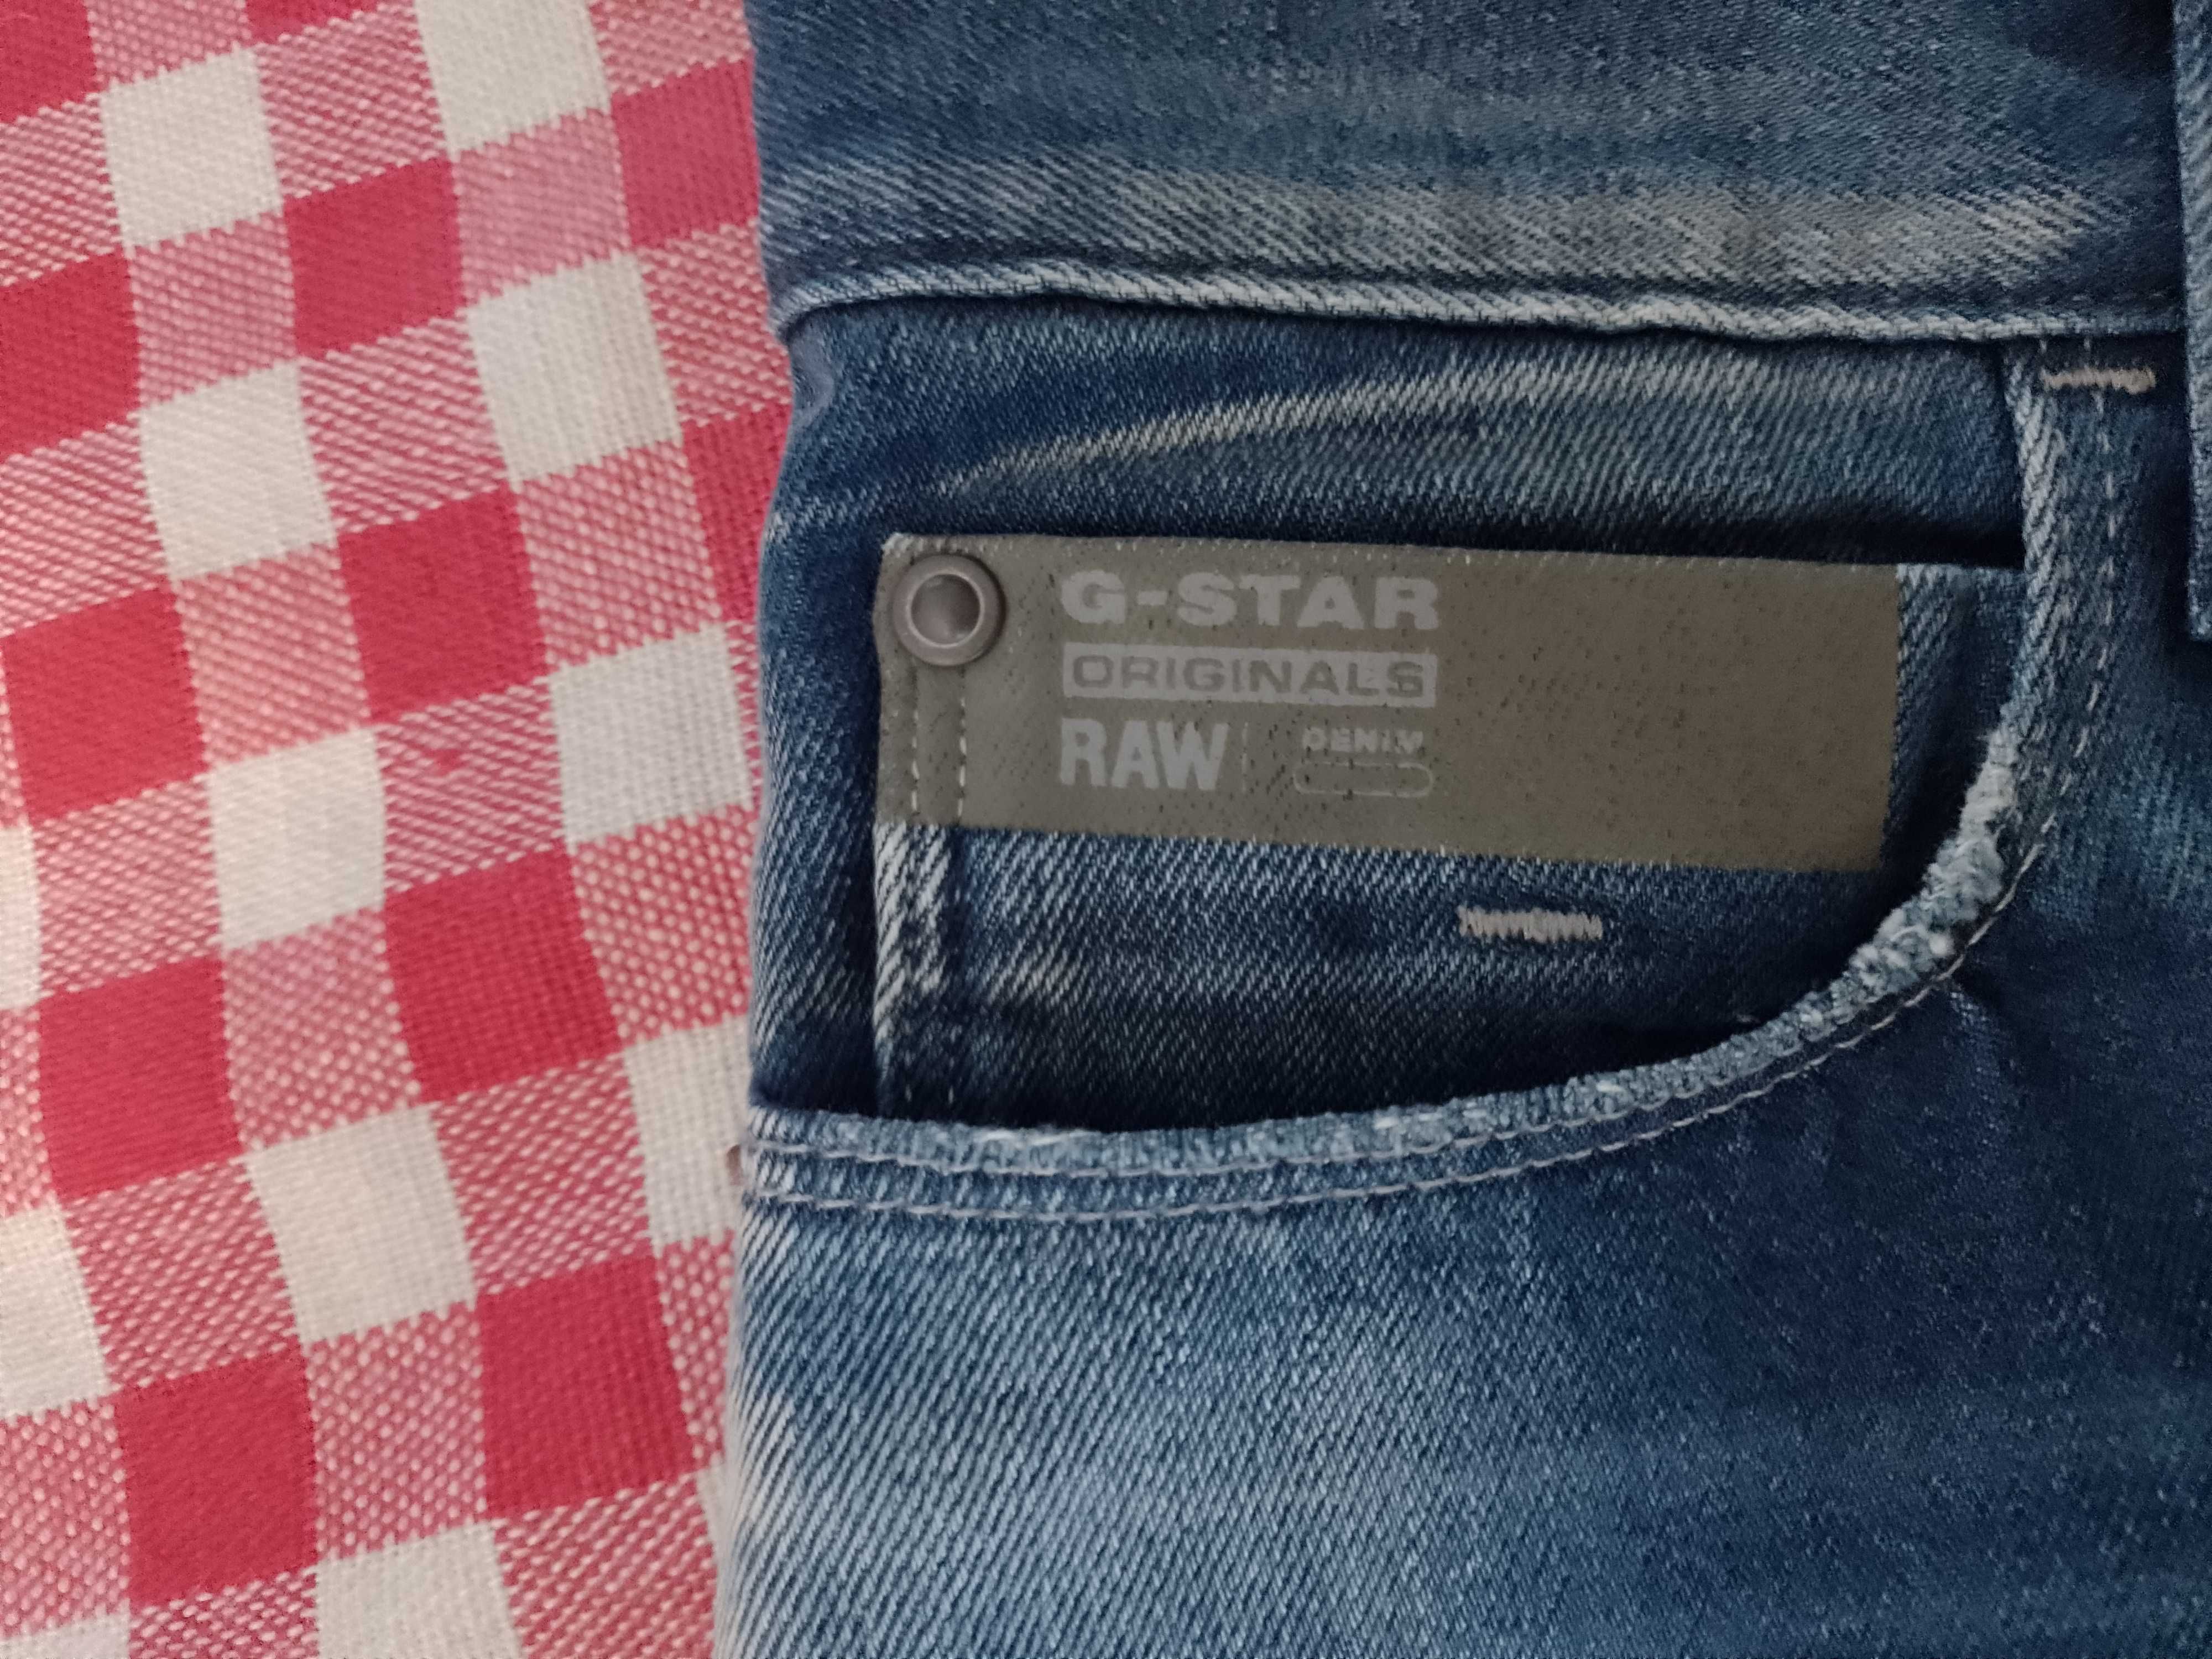 Spodnie męskie jeans G-star rozmiar W31 L34